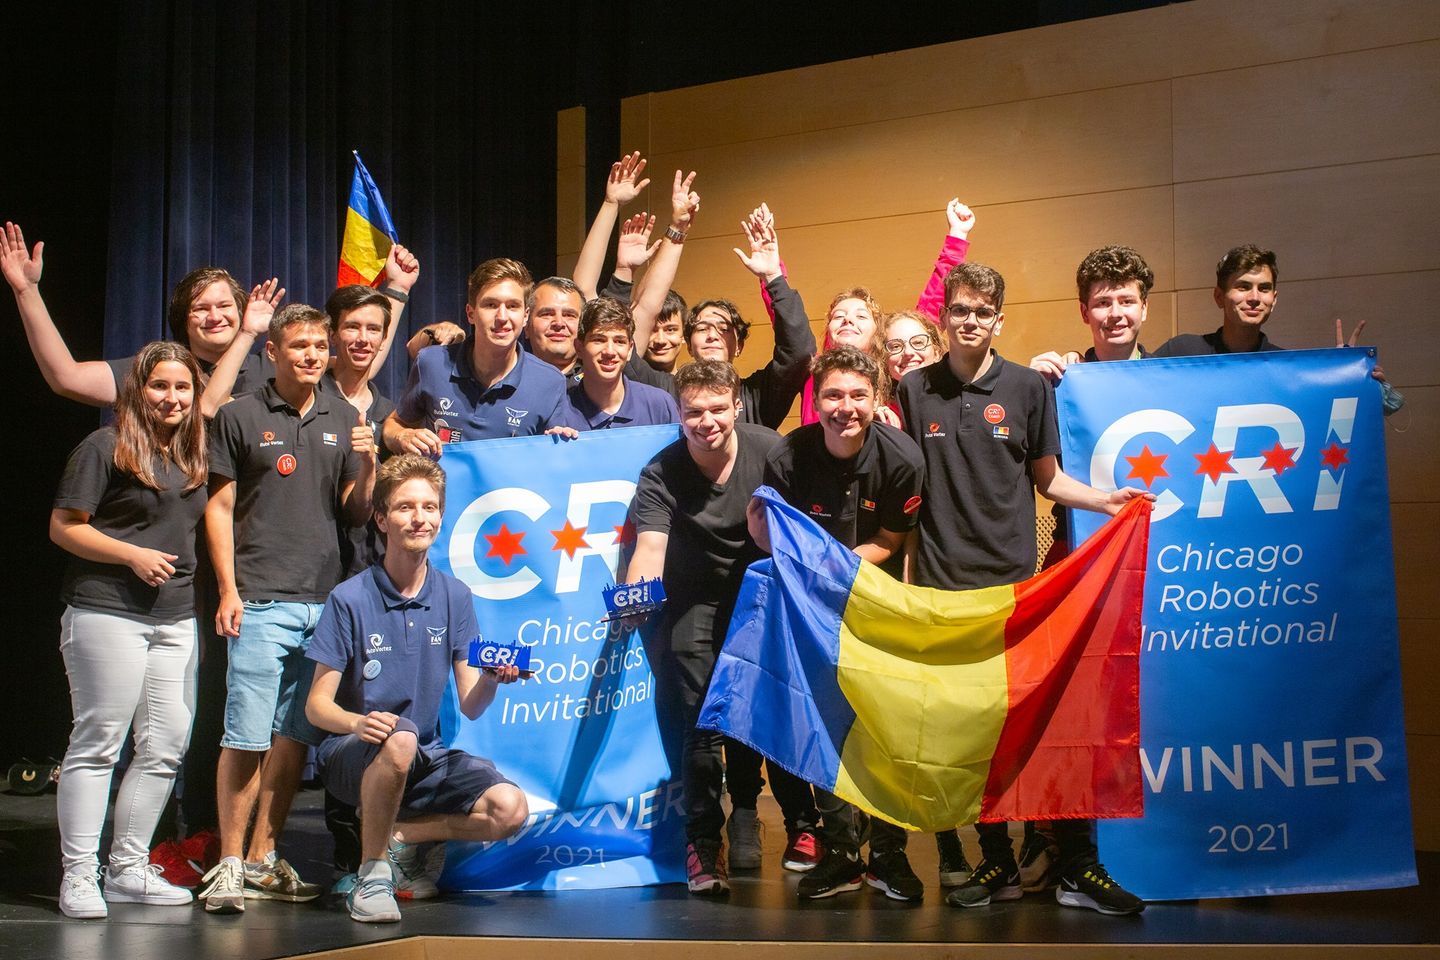 Echipa României a câștigat Campionatul Internațional de Robotică din SUA. E  pentru prima dată când campioană devine o echipă din afara Americii